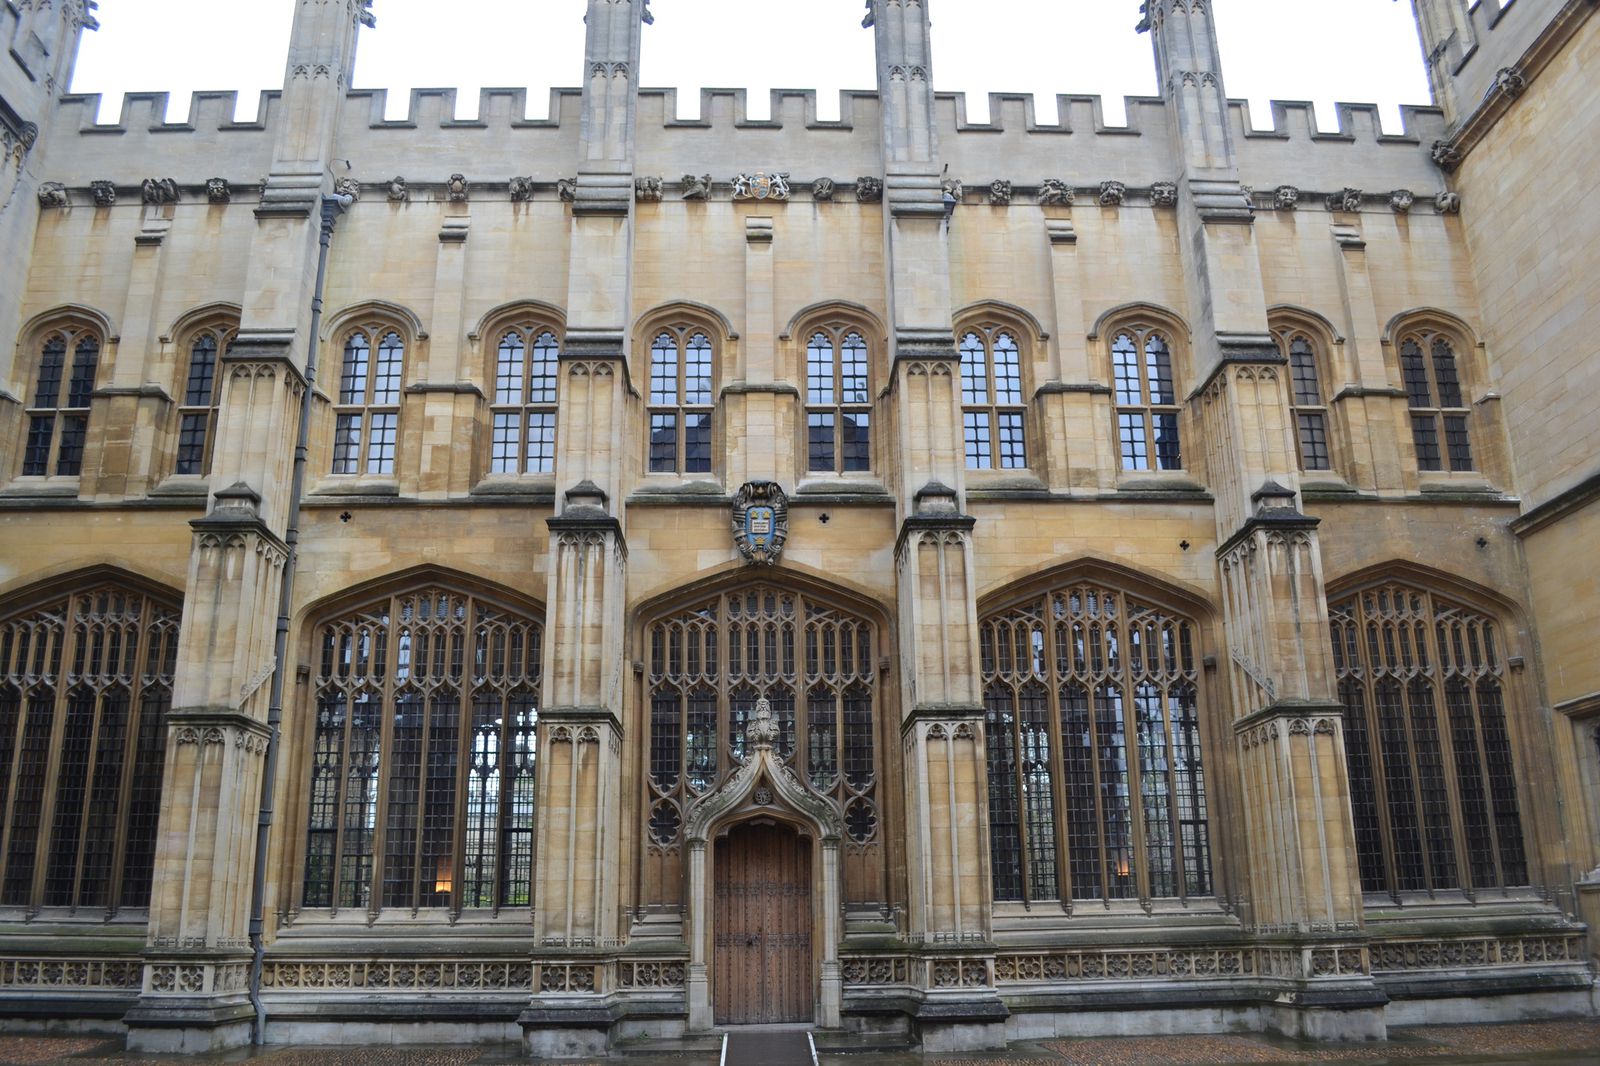 世界のユニーク大学 ハリーポッターの世界 University Of Oxford オックスフォード大学 が素敵すぎる Retrip リトリップ